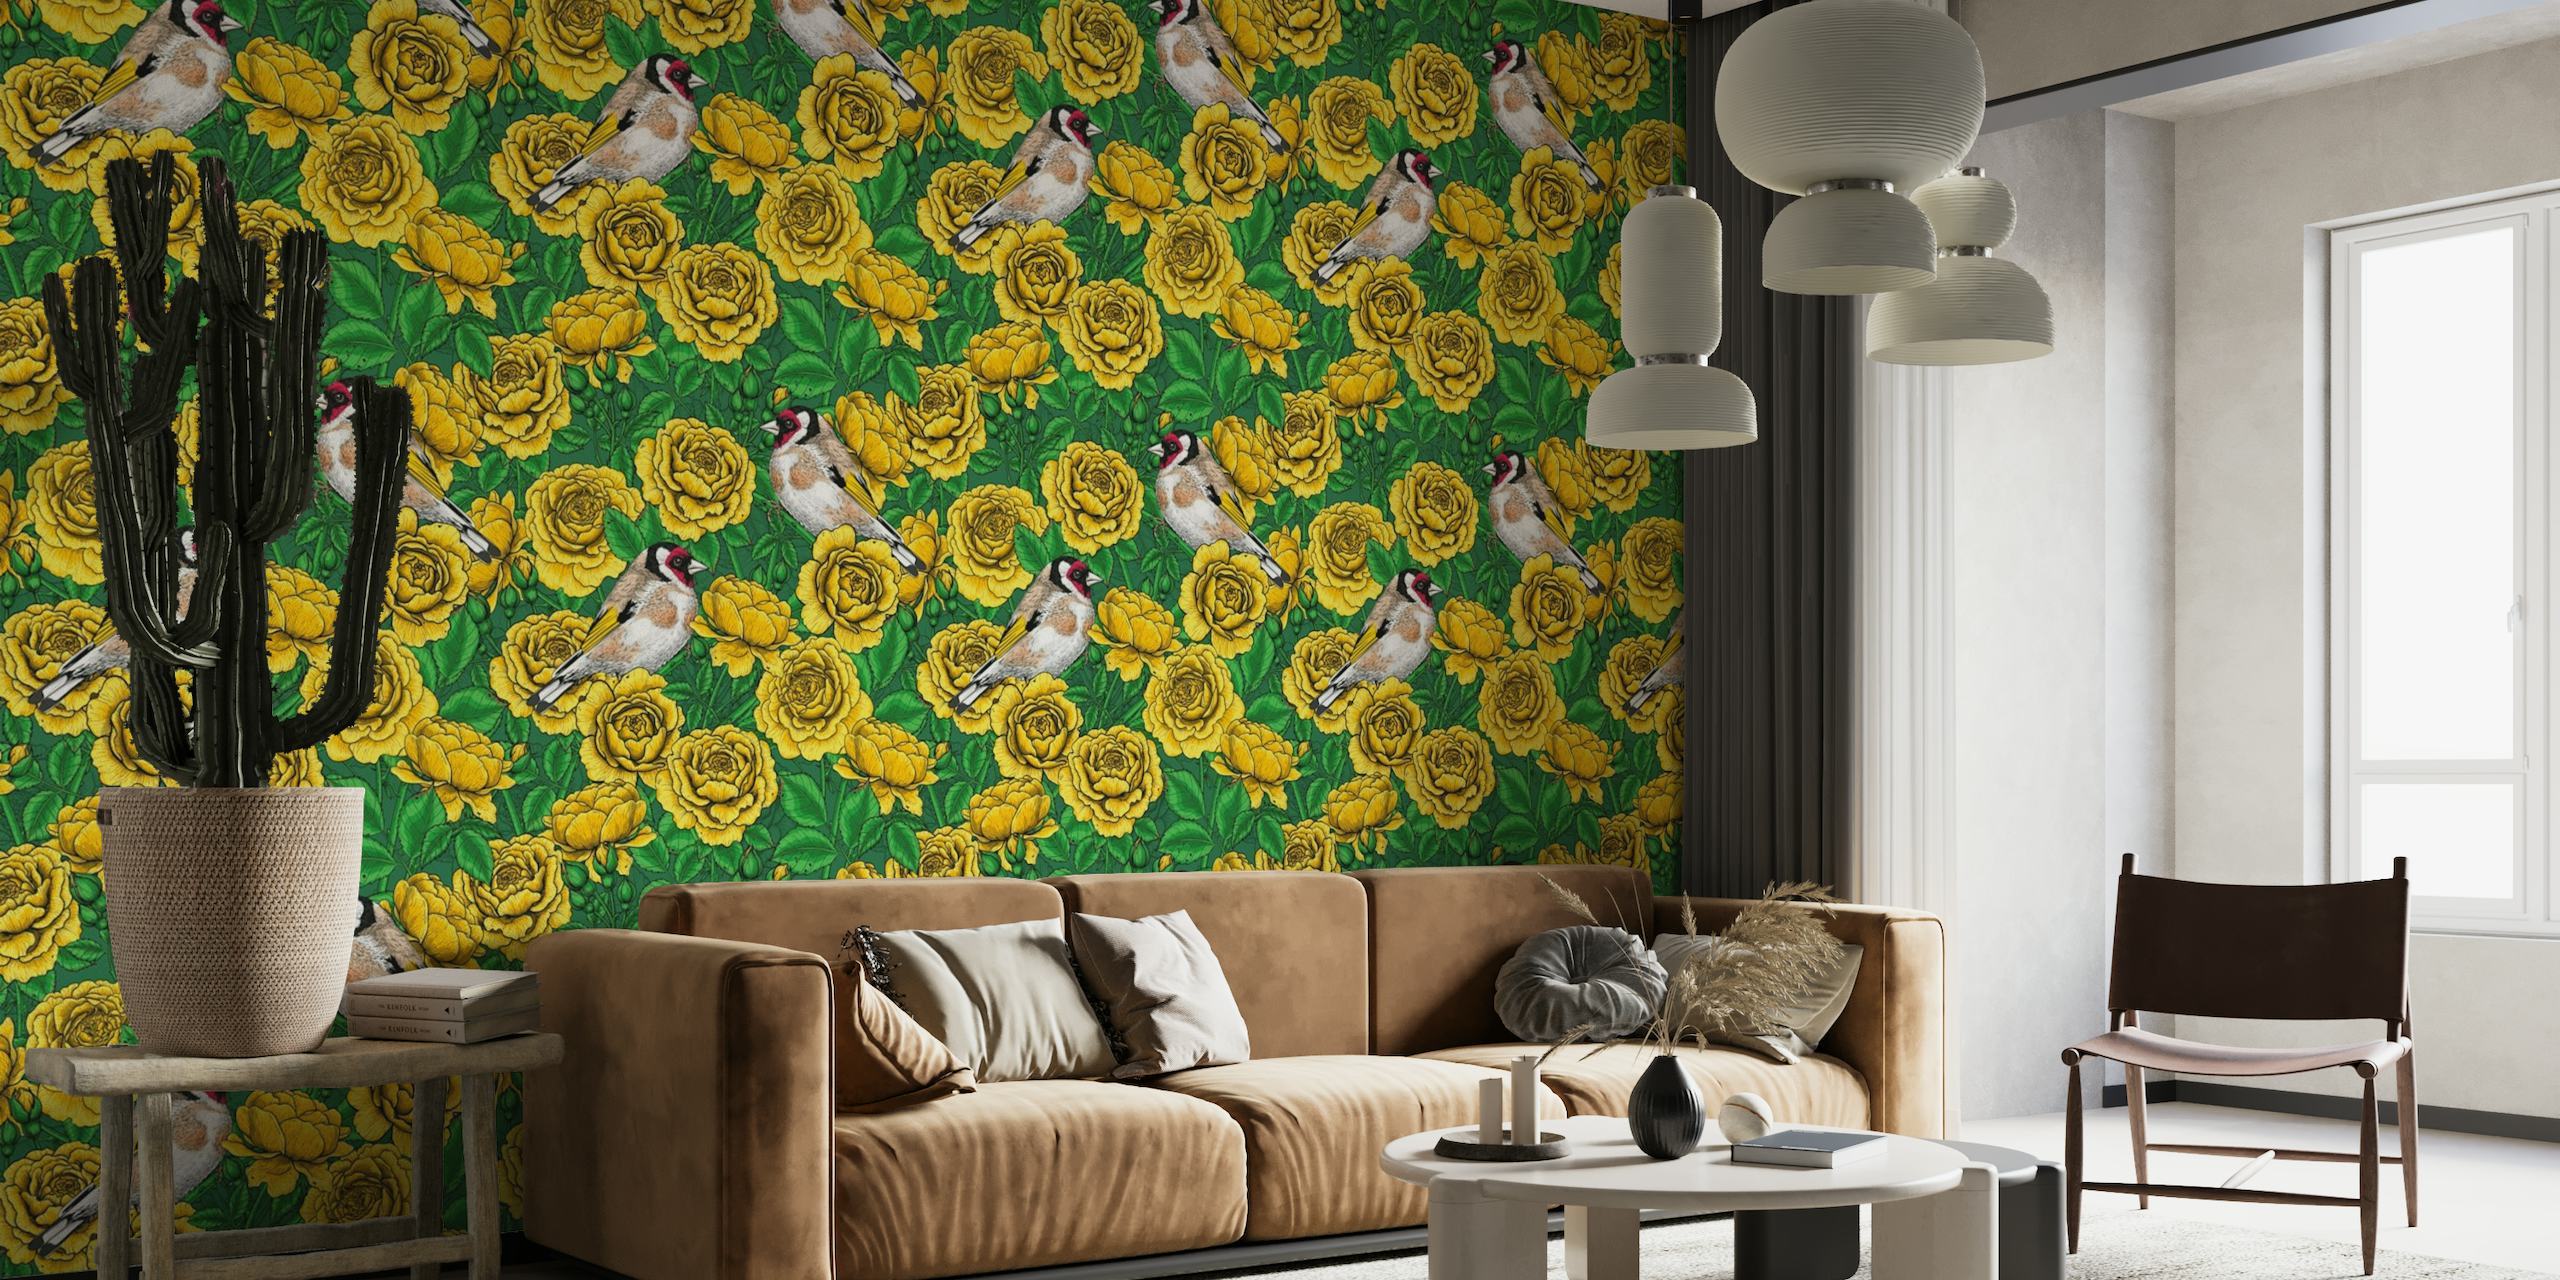 Fotobehang met gele rozen en distelvinkvogels op een groene achtergrond